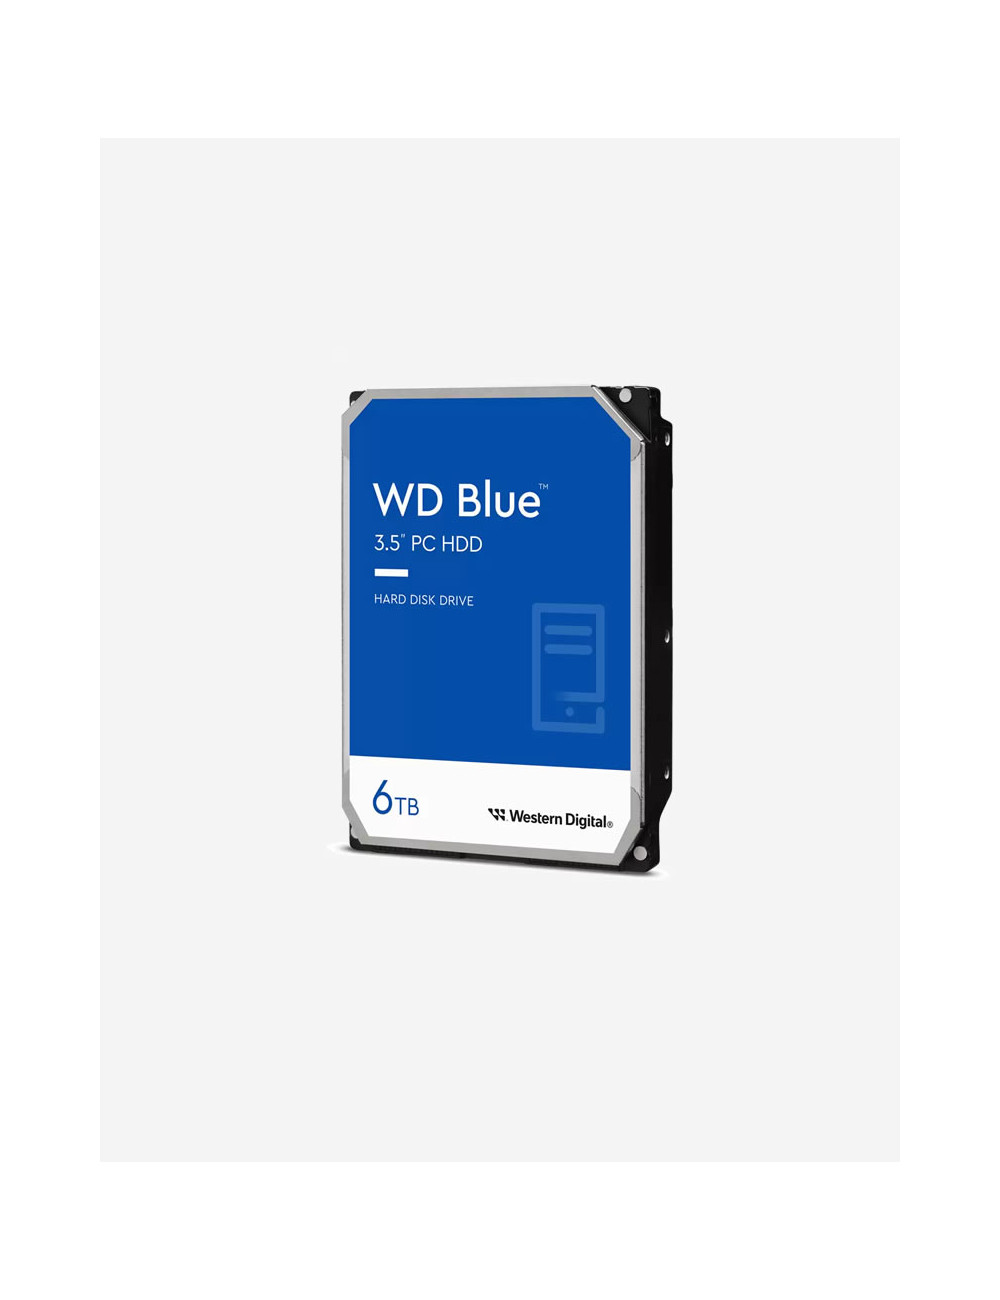 WD BLUE 6TB 3.5" HDD Drive